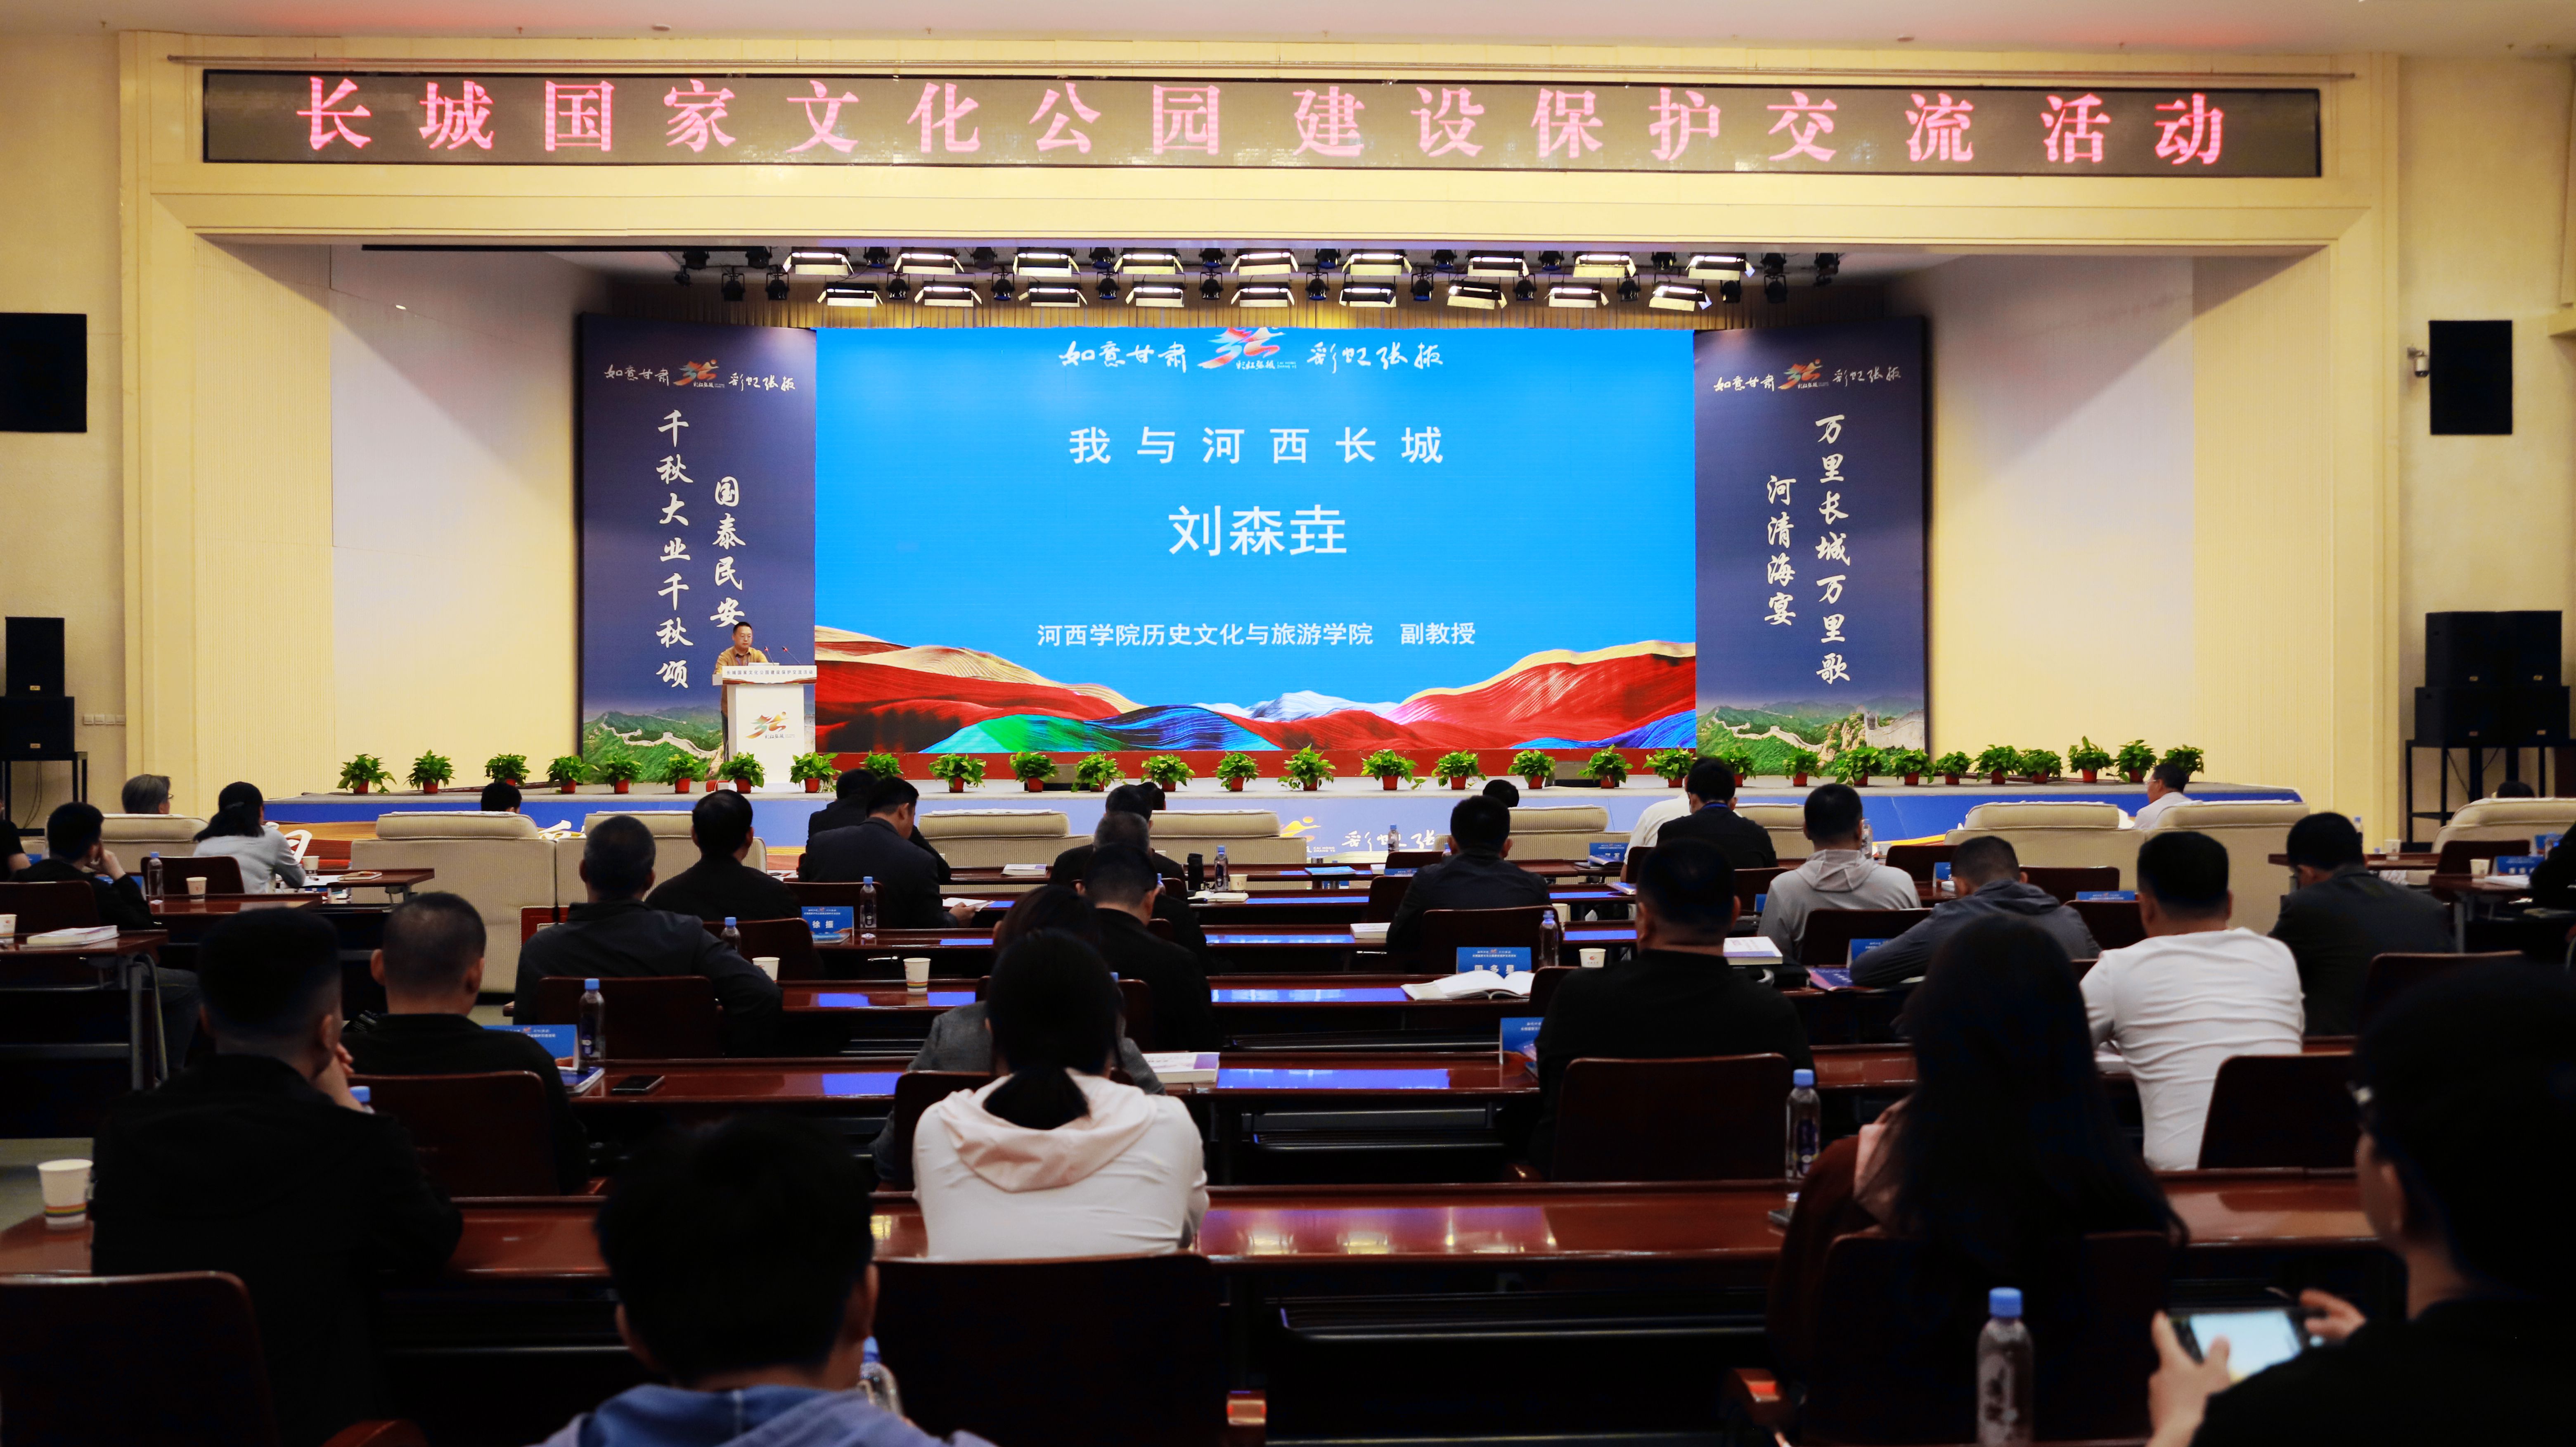 长城国家文化公园建设保护交流活动在张掖市开幕